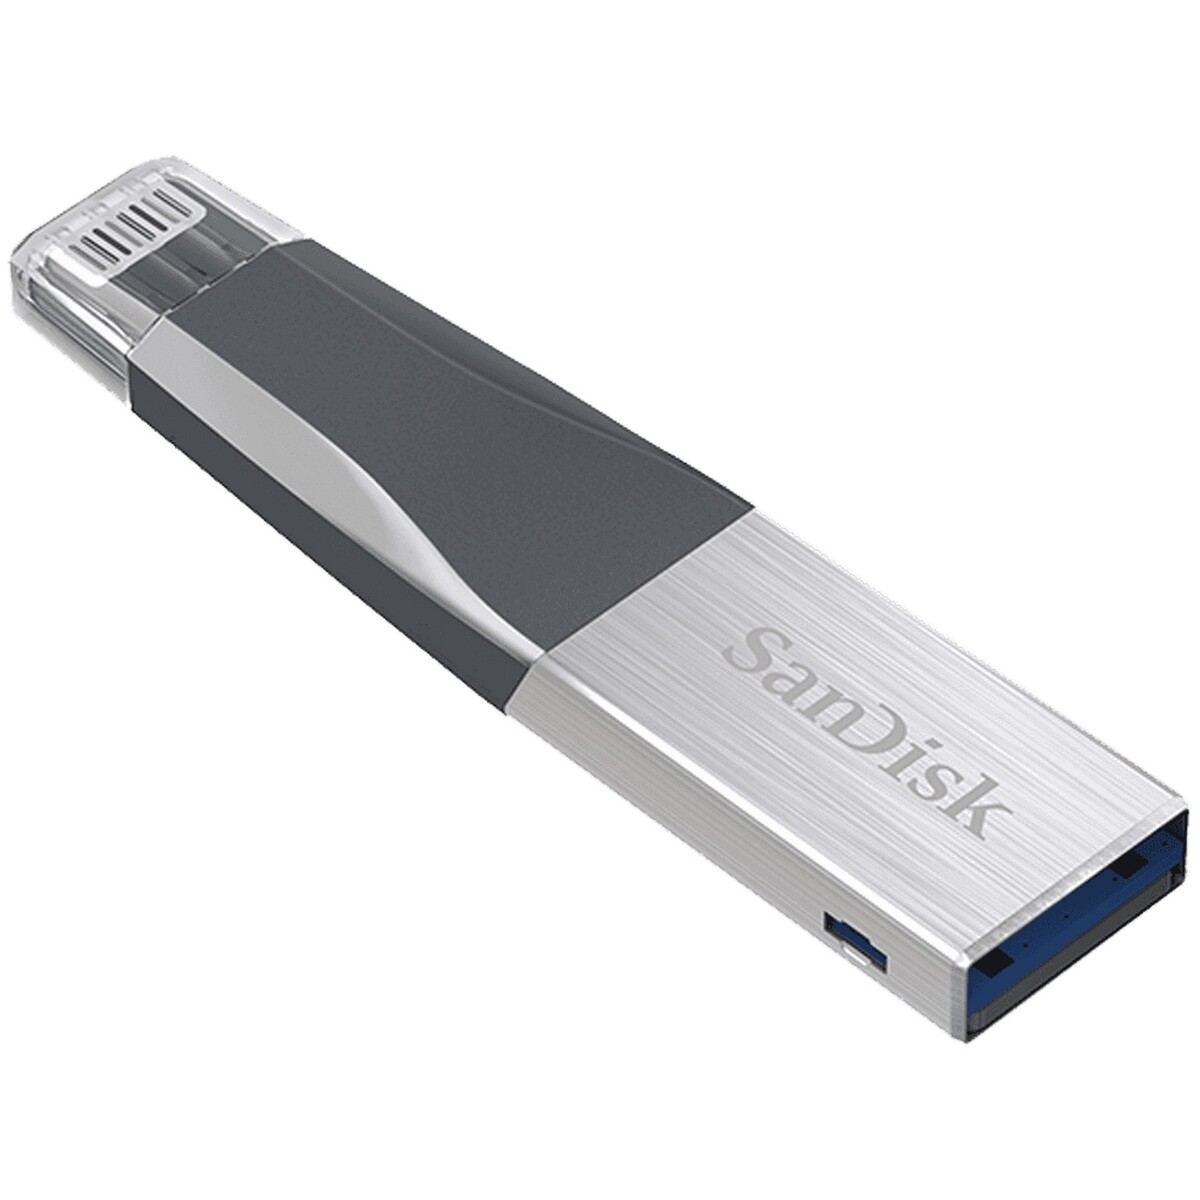 Sandisk Flash Drive iXpand Mini 64GB